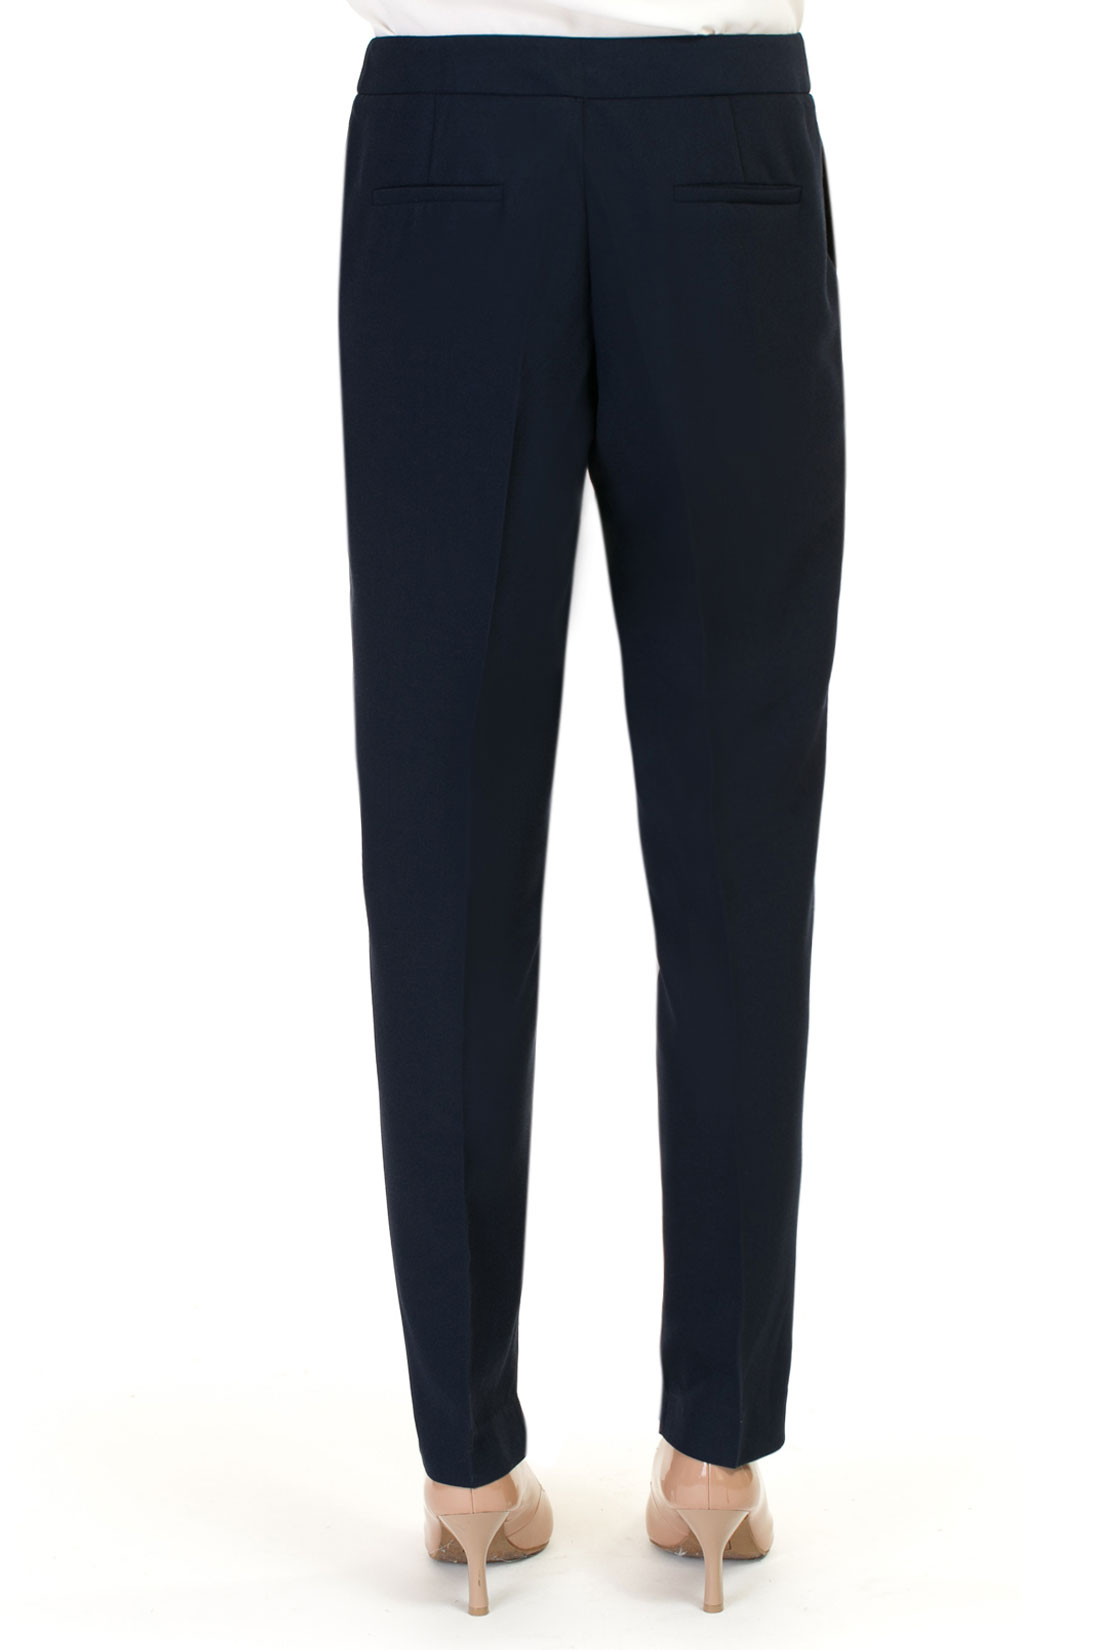 Деловые брюки из крепдешина (арт. baon B297001), размер XXL, цвет синий Деловые брюки из крепдешина (арт. baon B297001) - фото 2